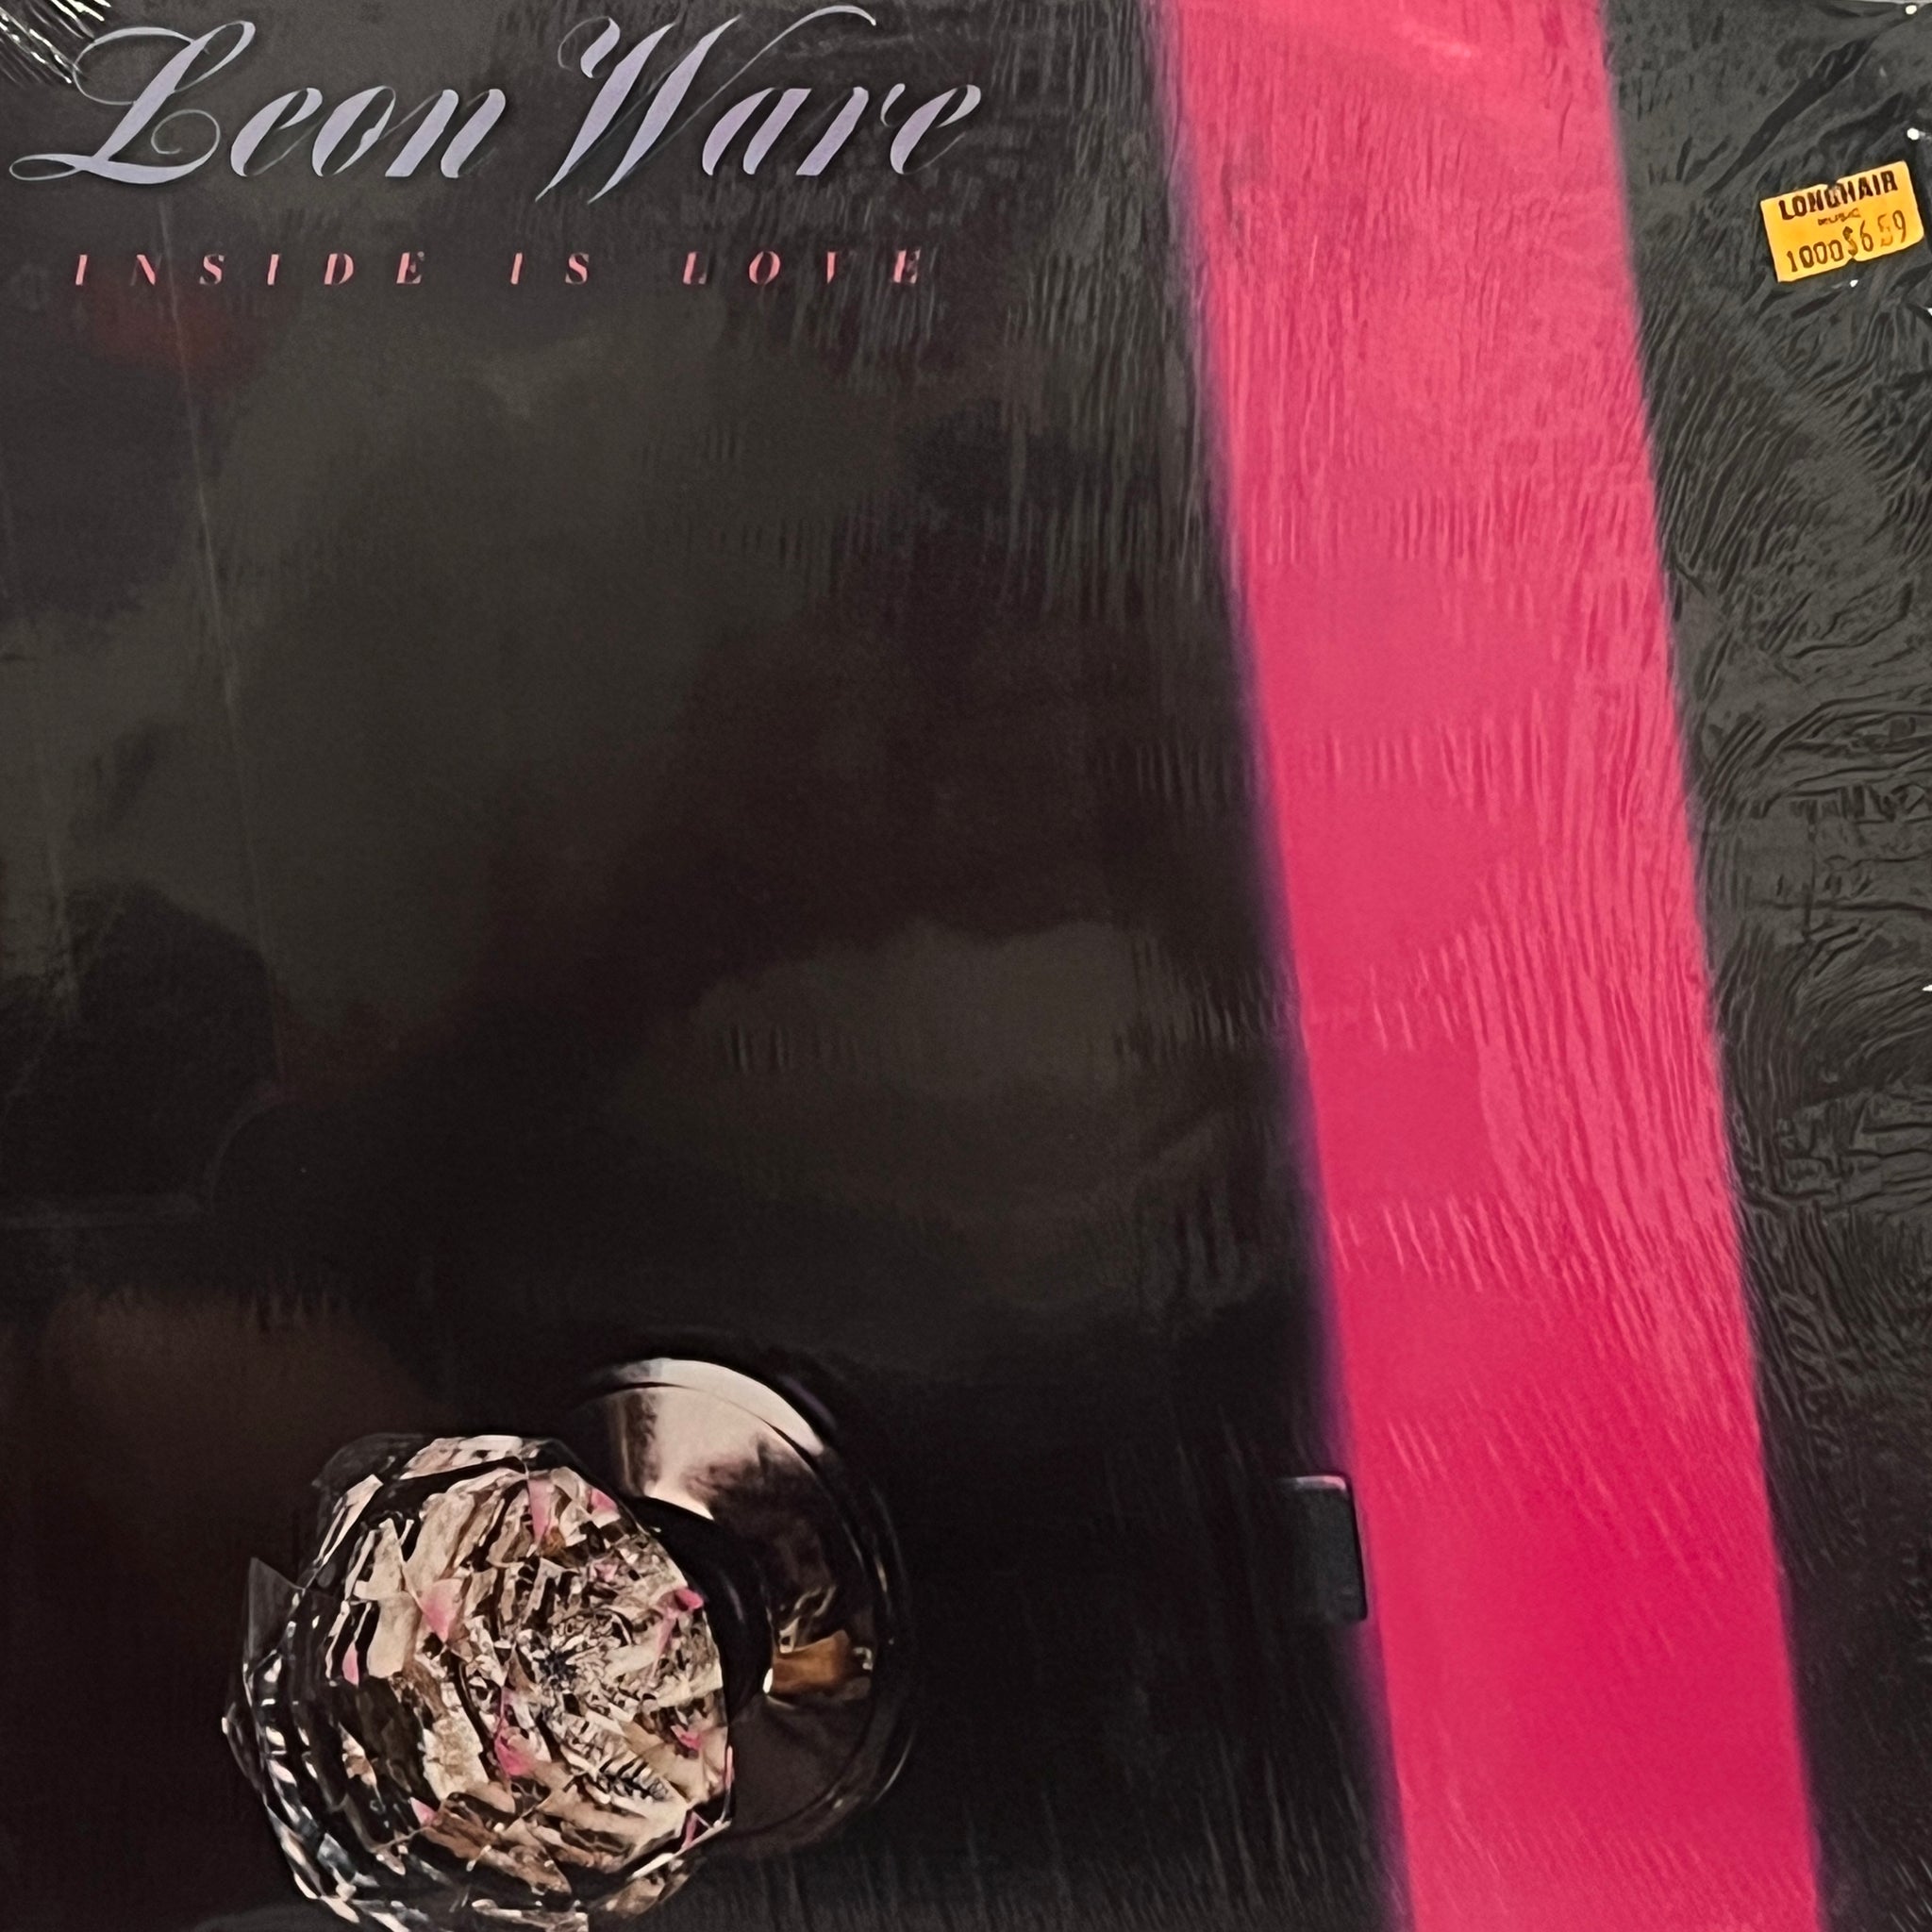 Leon Ware – Inside Is Love